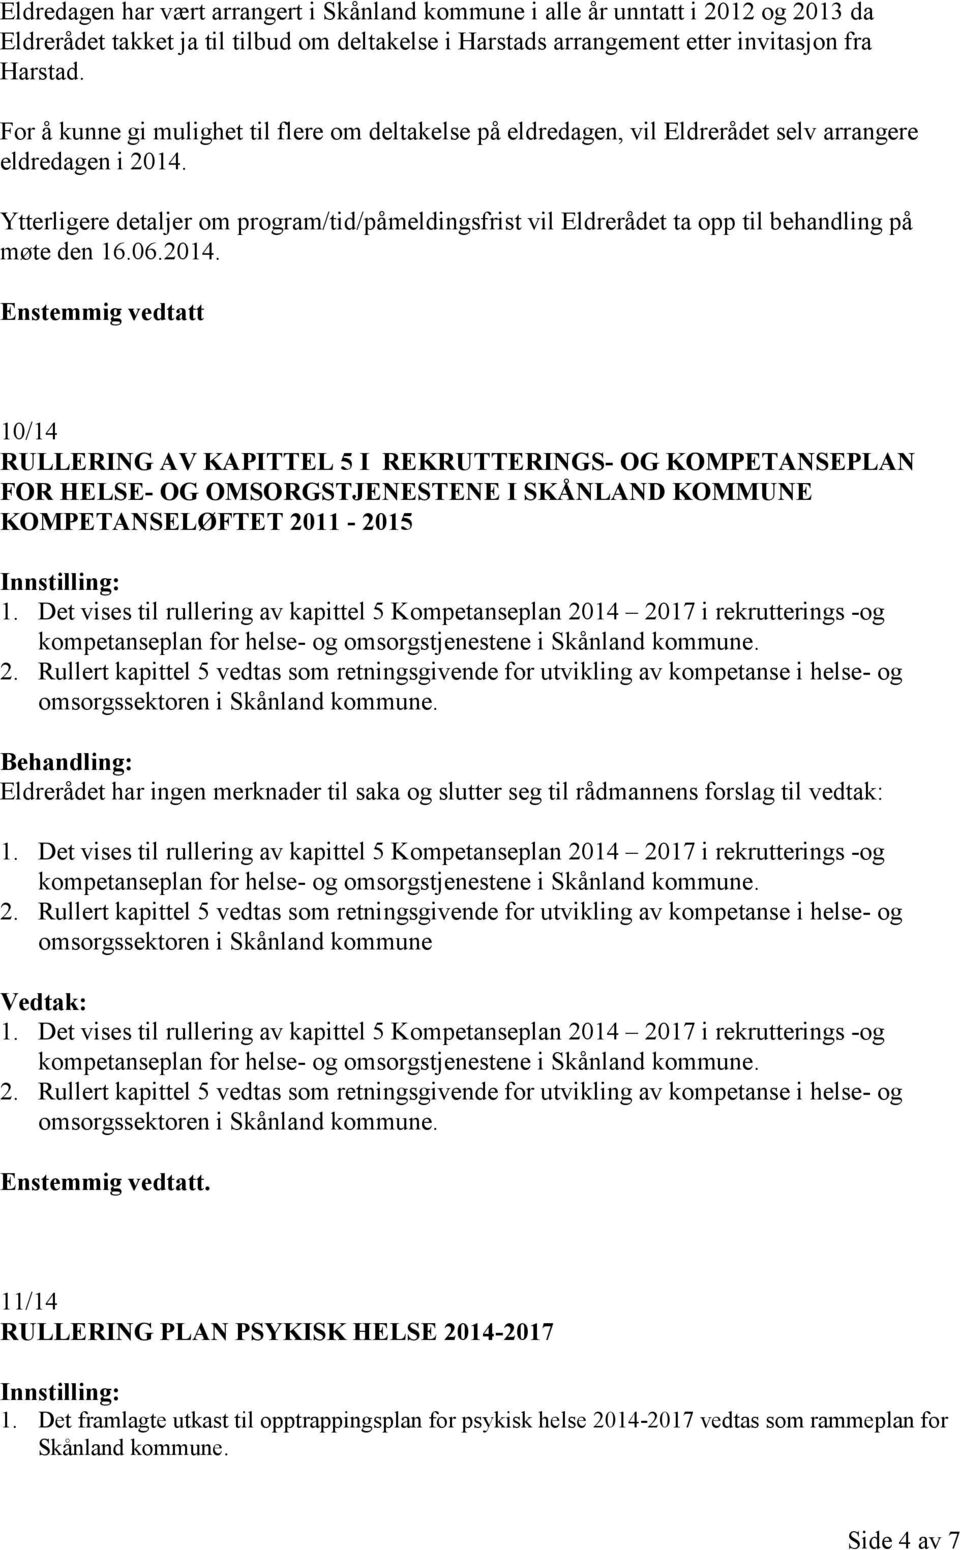 Ytterligere detaljer om program/tid/påmeldingsfrist vil Eldrerådet ta opp til behandling på møte den 16.06.2014.